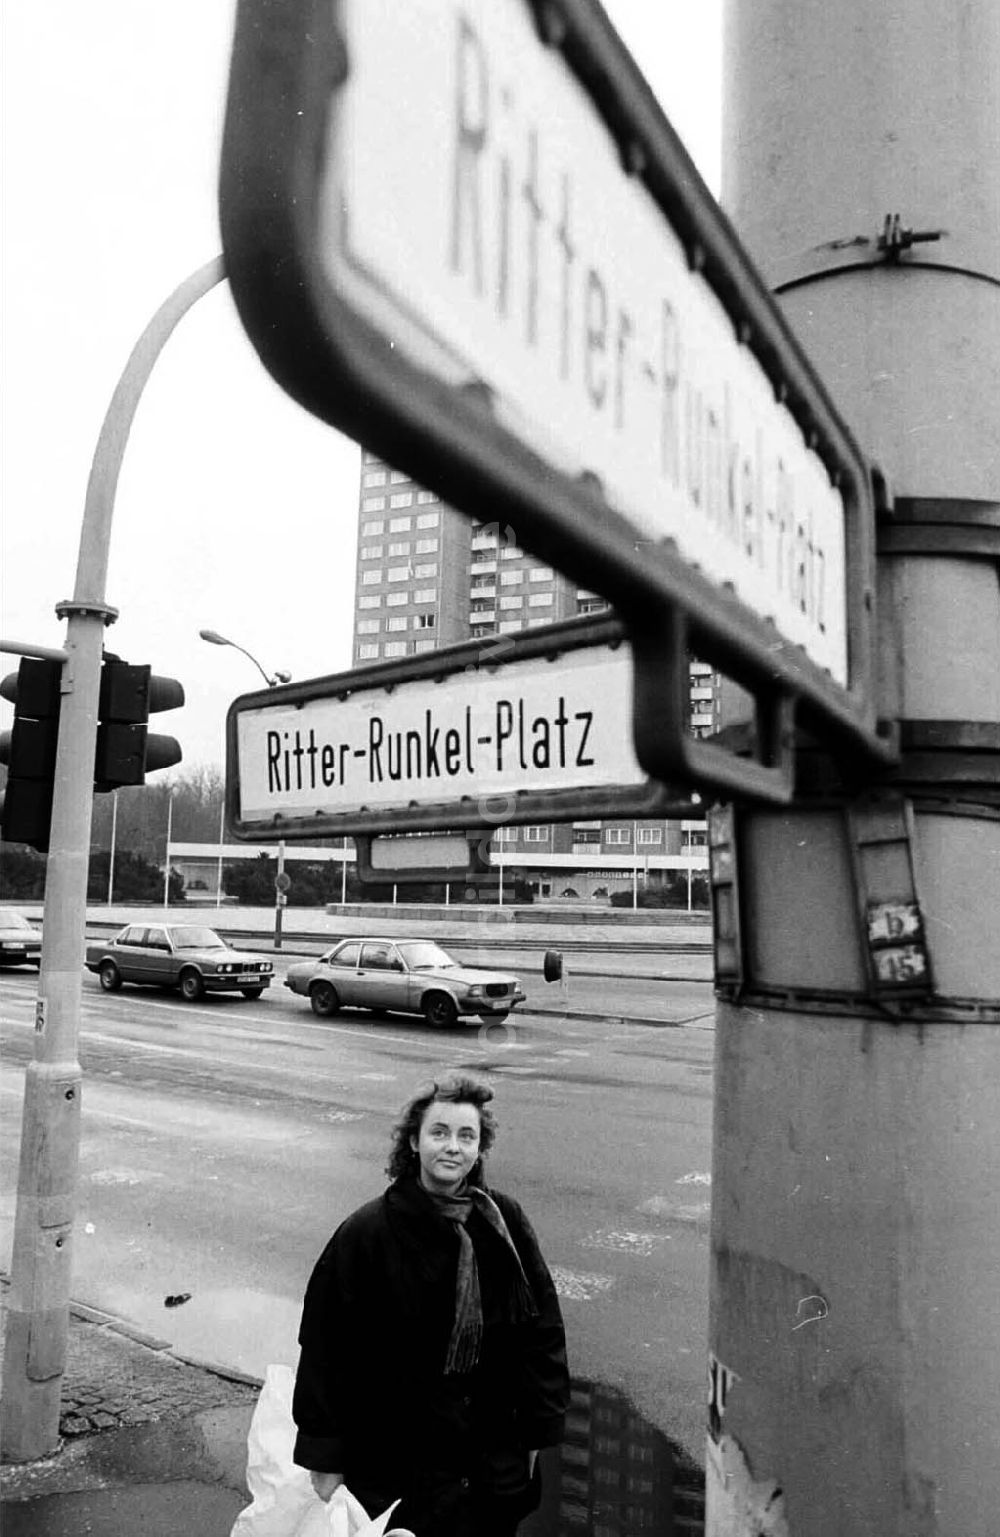 DDR-Bildarchiv: Berlin - 14.02.92 Umbnennung des Leninplatzes in Ritter-Runkel-Platz